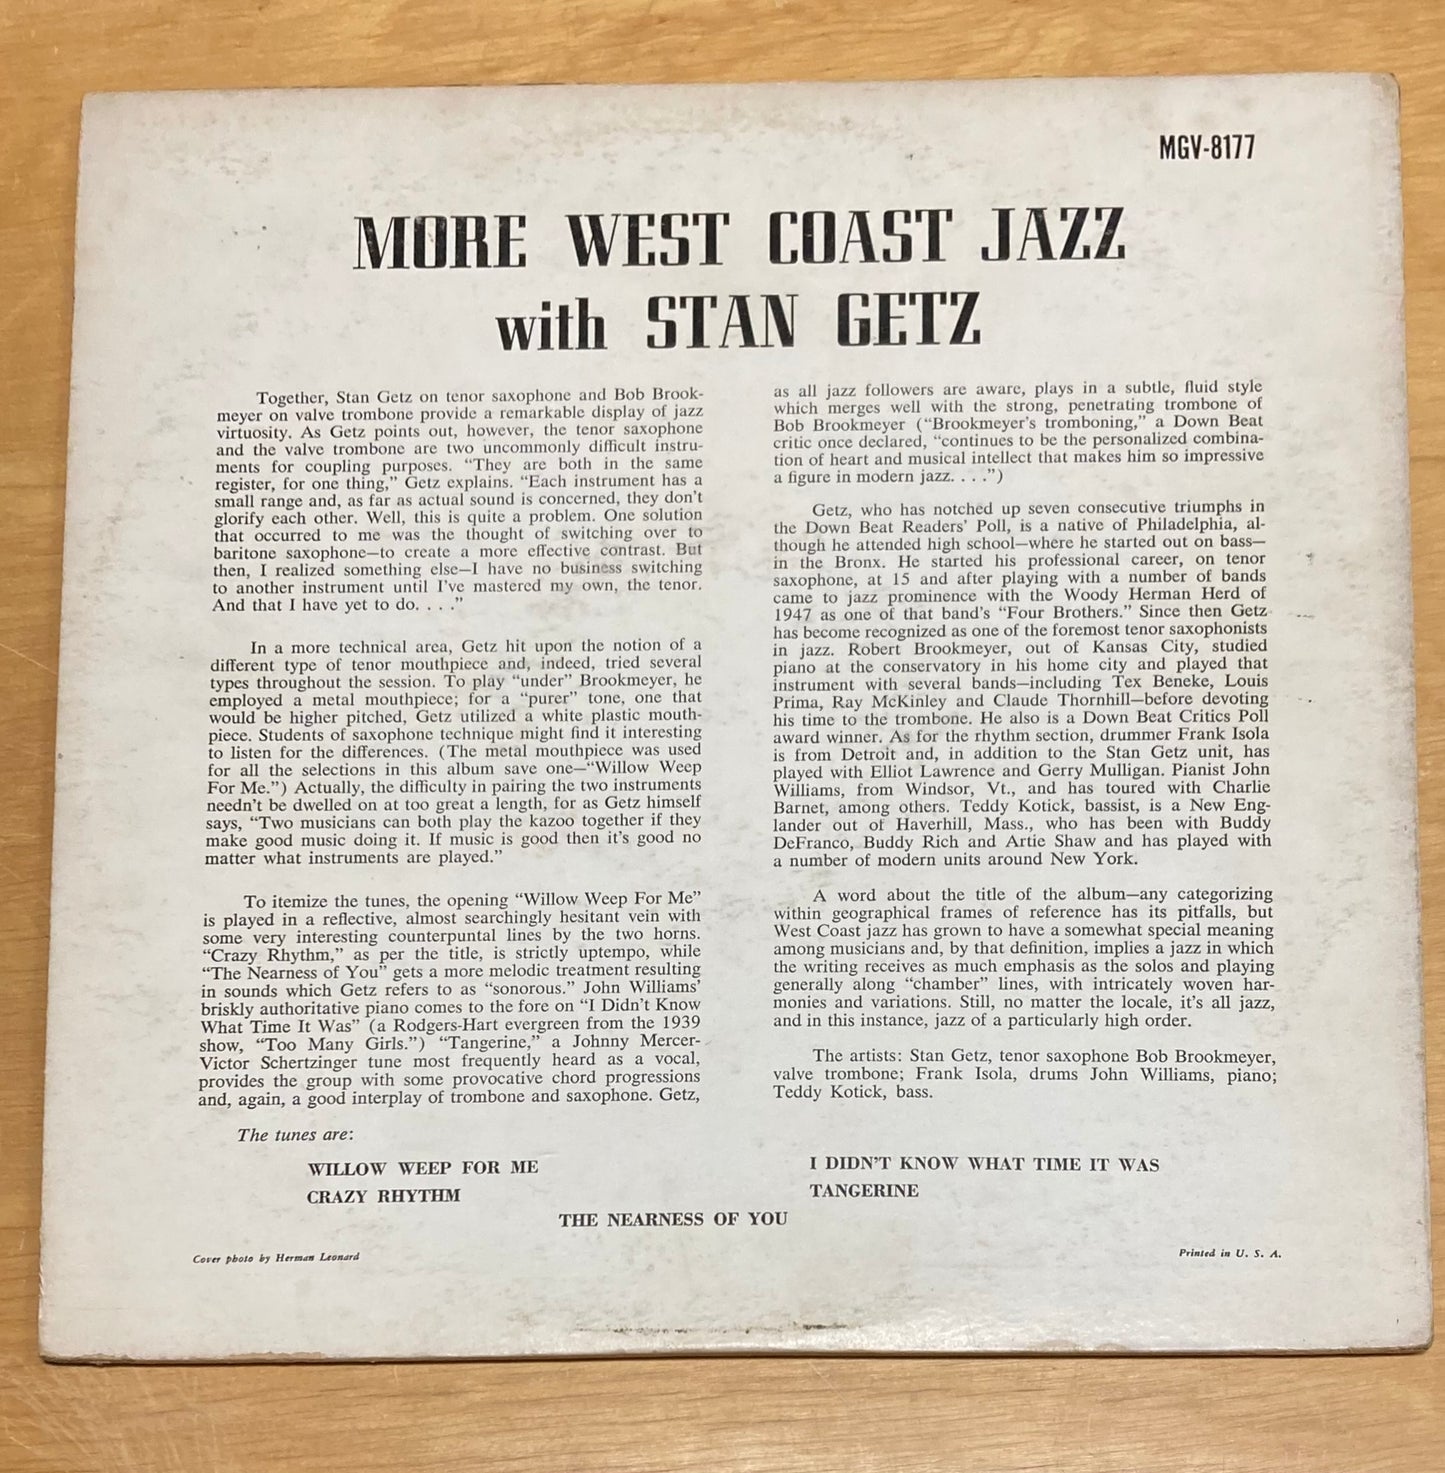 More West Coast Jazz - Stan Getz